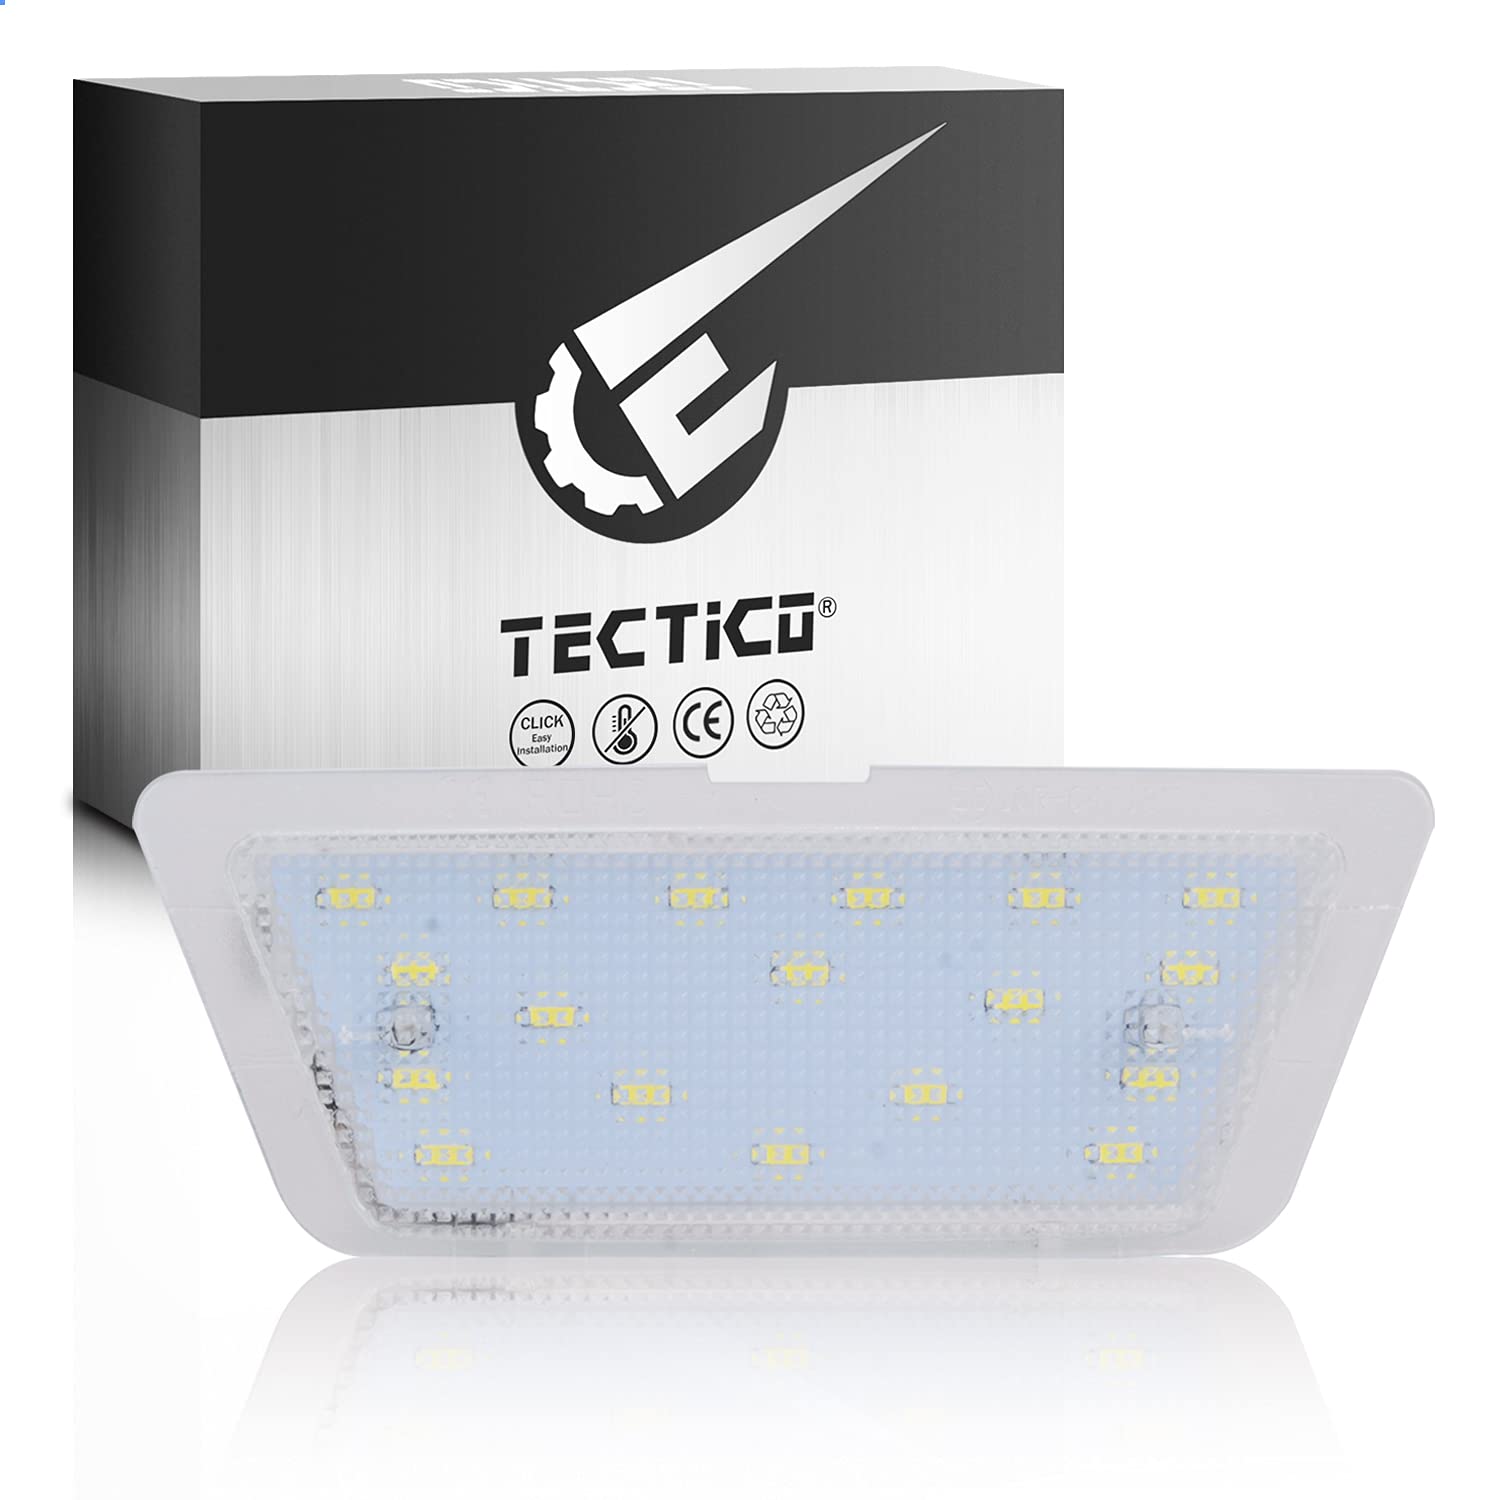 TECTICO LED Kennzeichenbeleuchtung Nummernschildbeleuchtung SMD Ultra Weiß Canbus Kompatible mit Opel Astra G (1998-2004), 1 Lampe von TECTICO